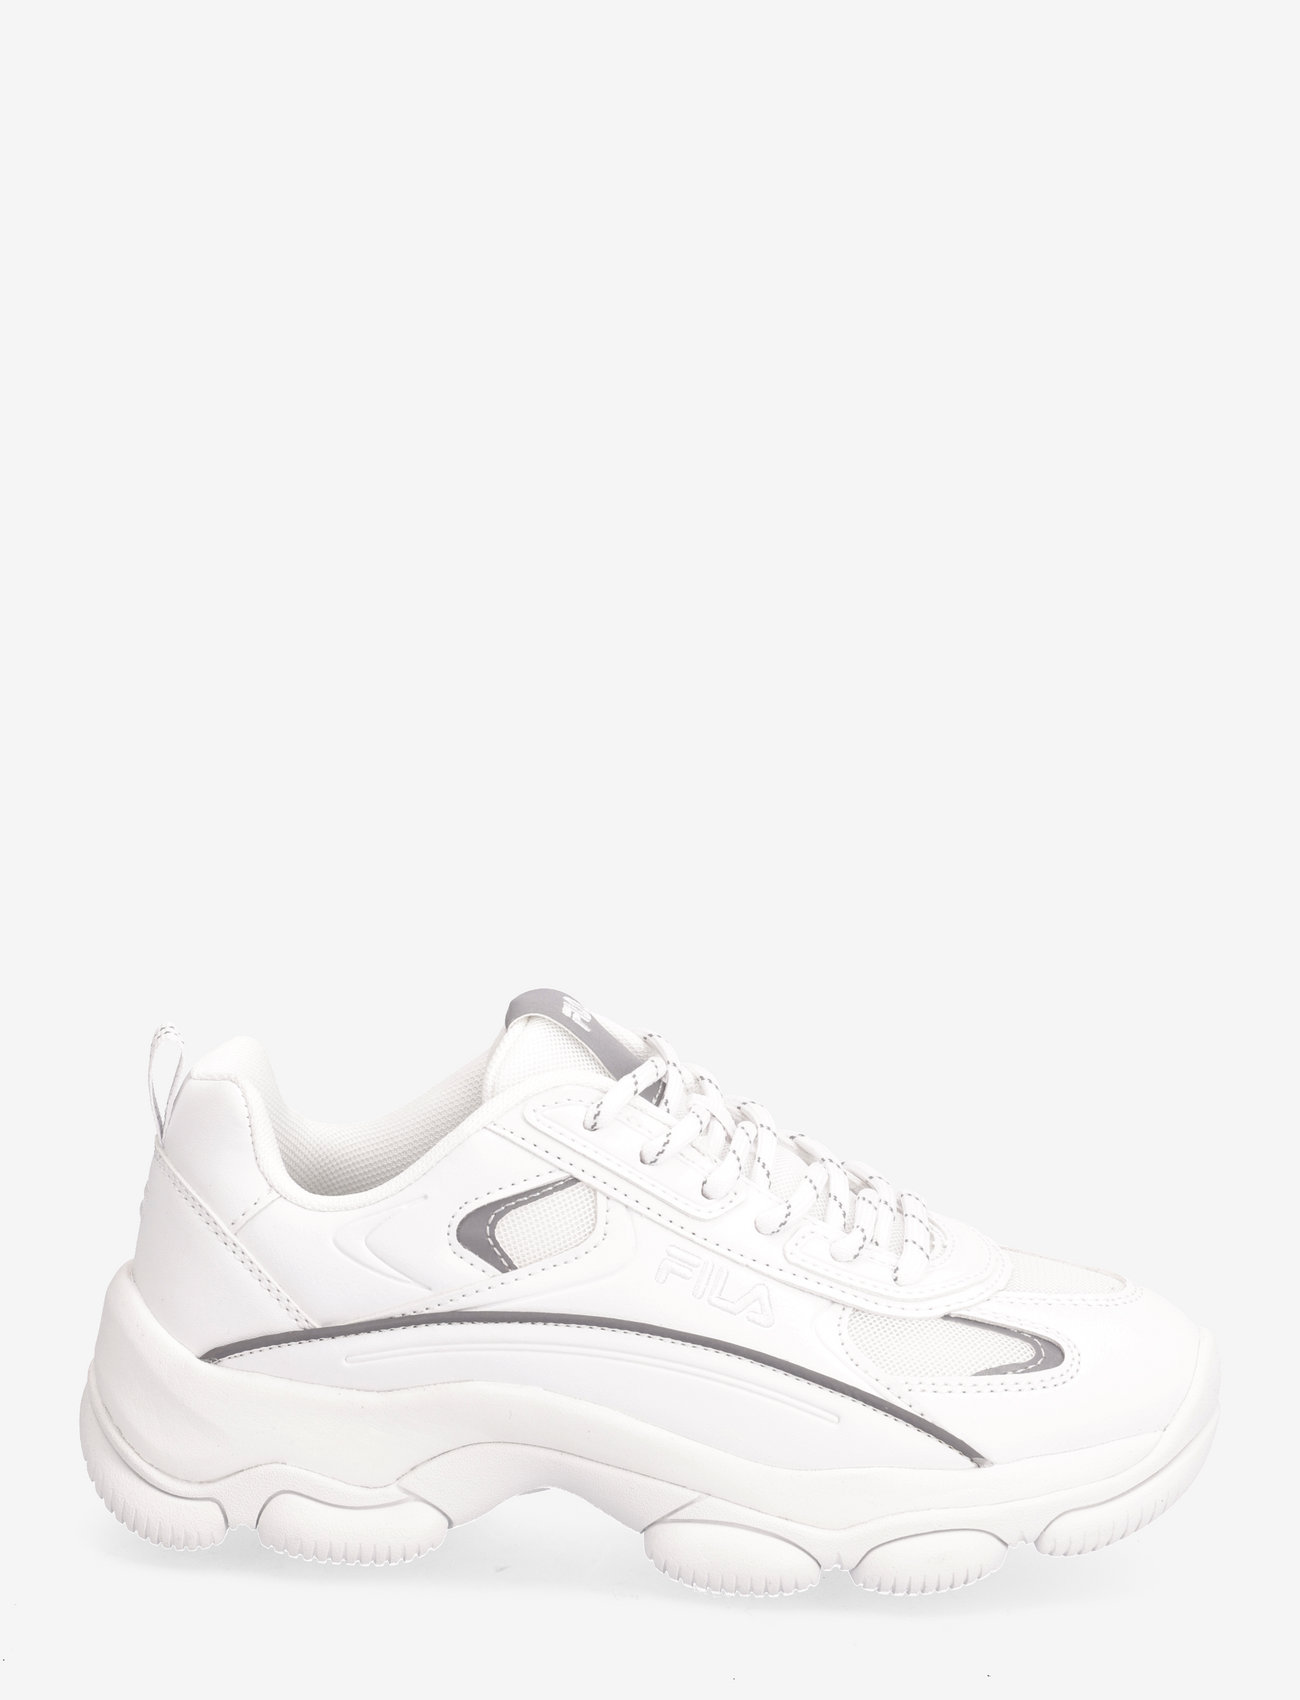 FILA - STRADA LUCID wmn - chunky sneaker - white - 1